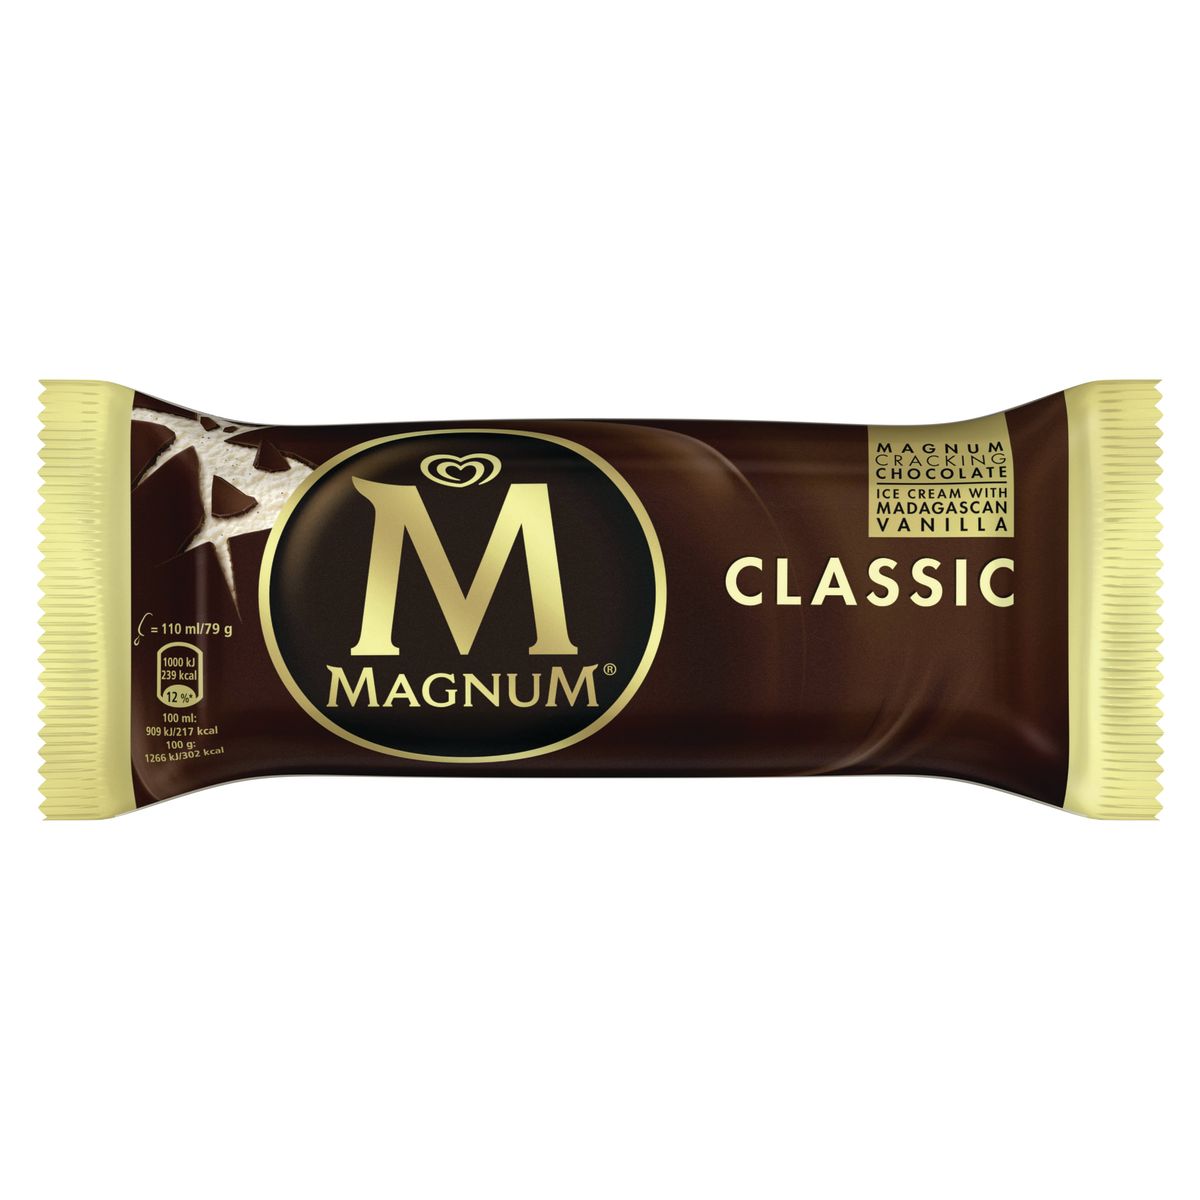 Magnum Classic - Consort Frozen Foods